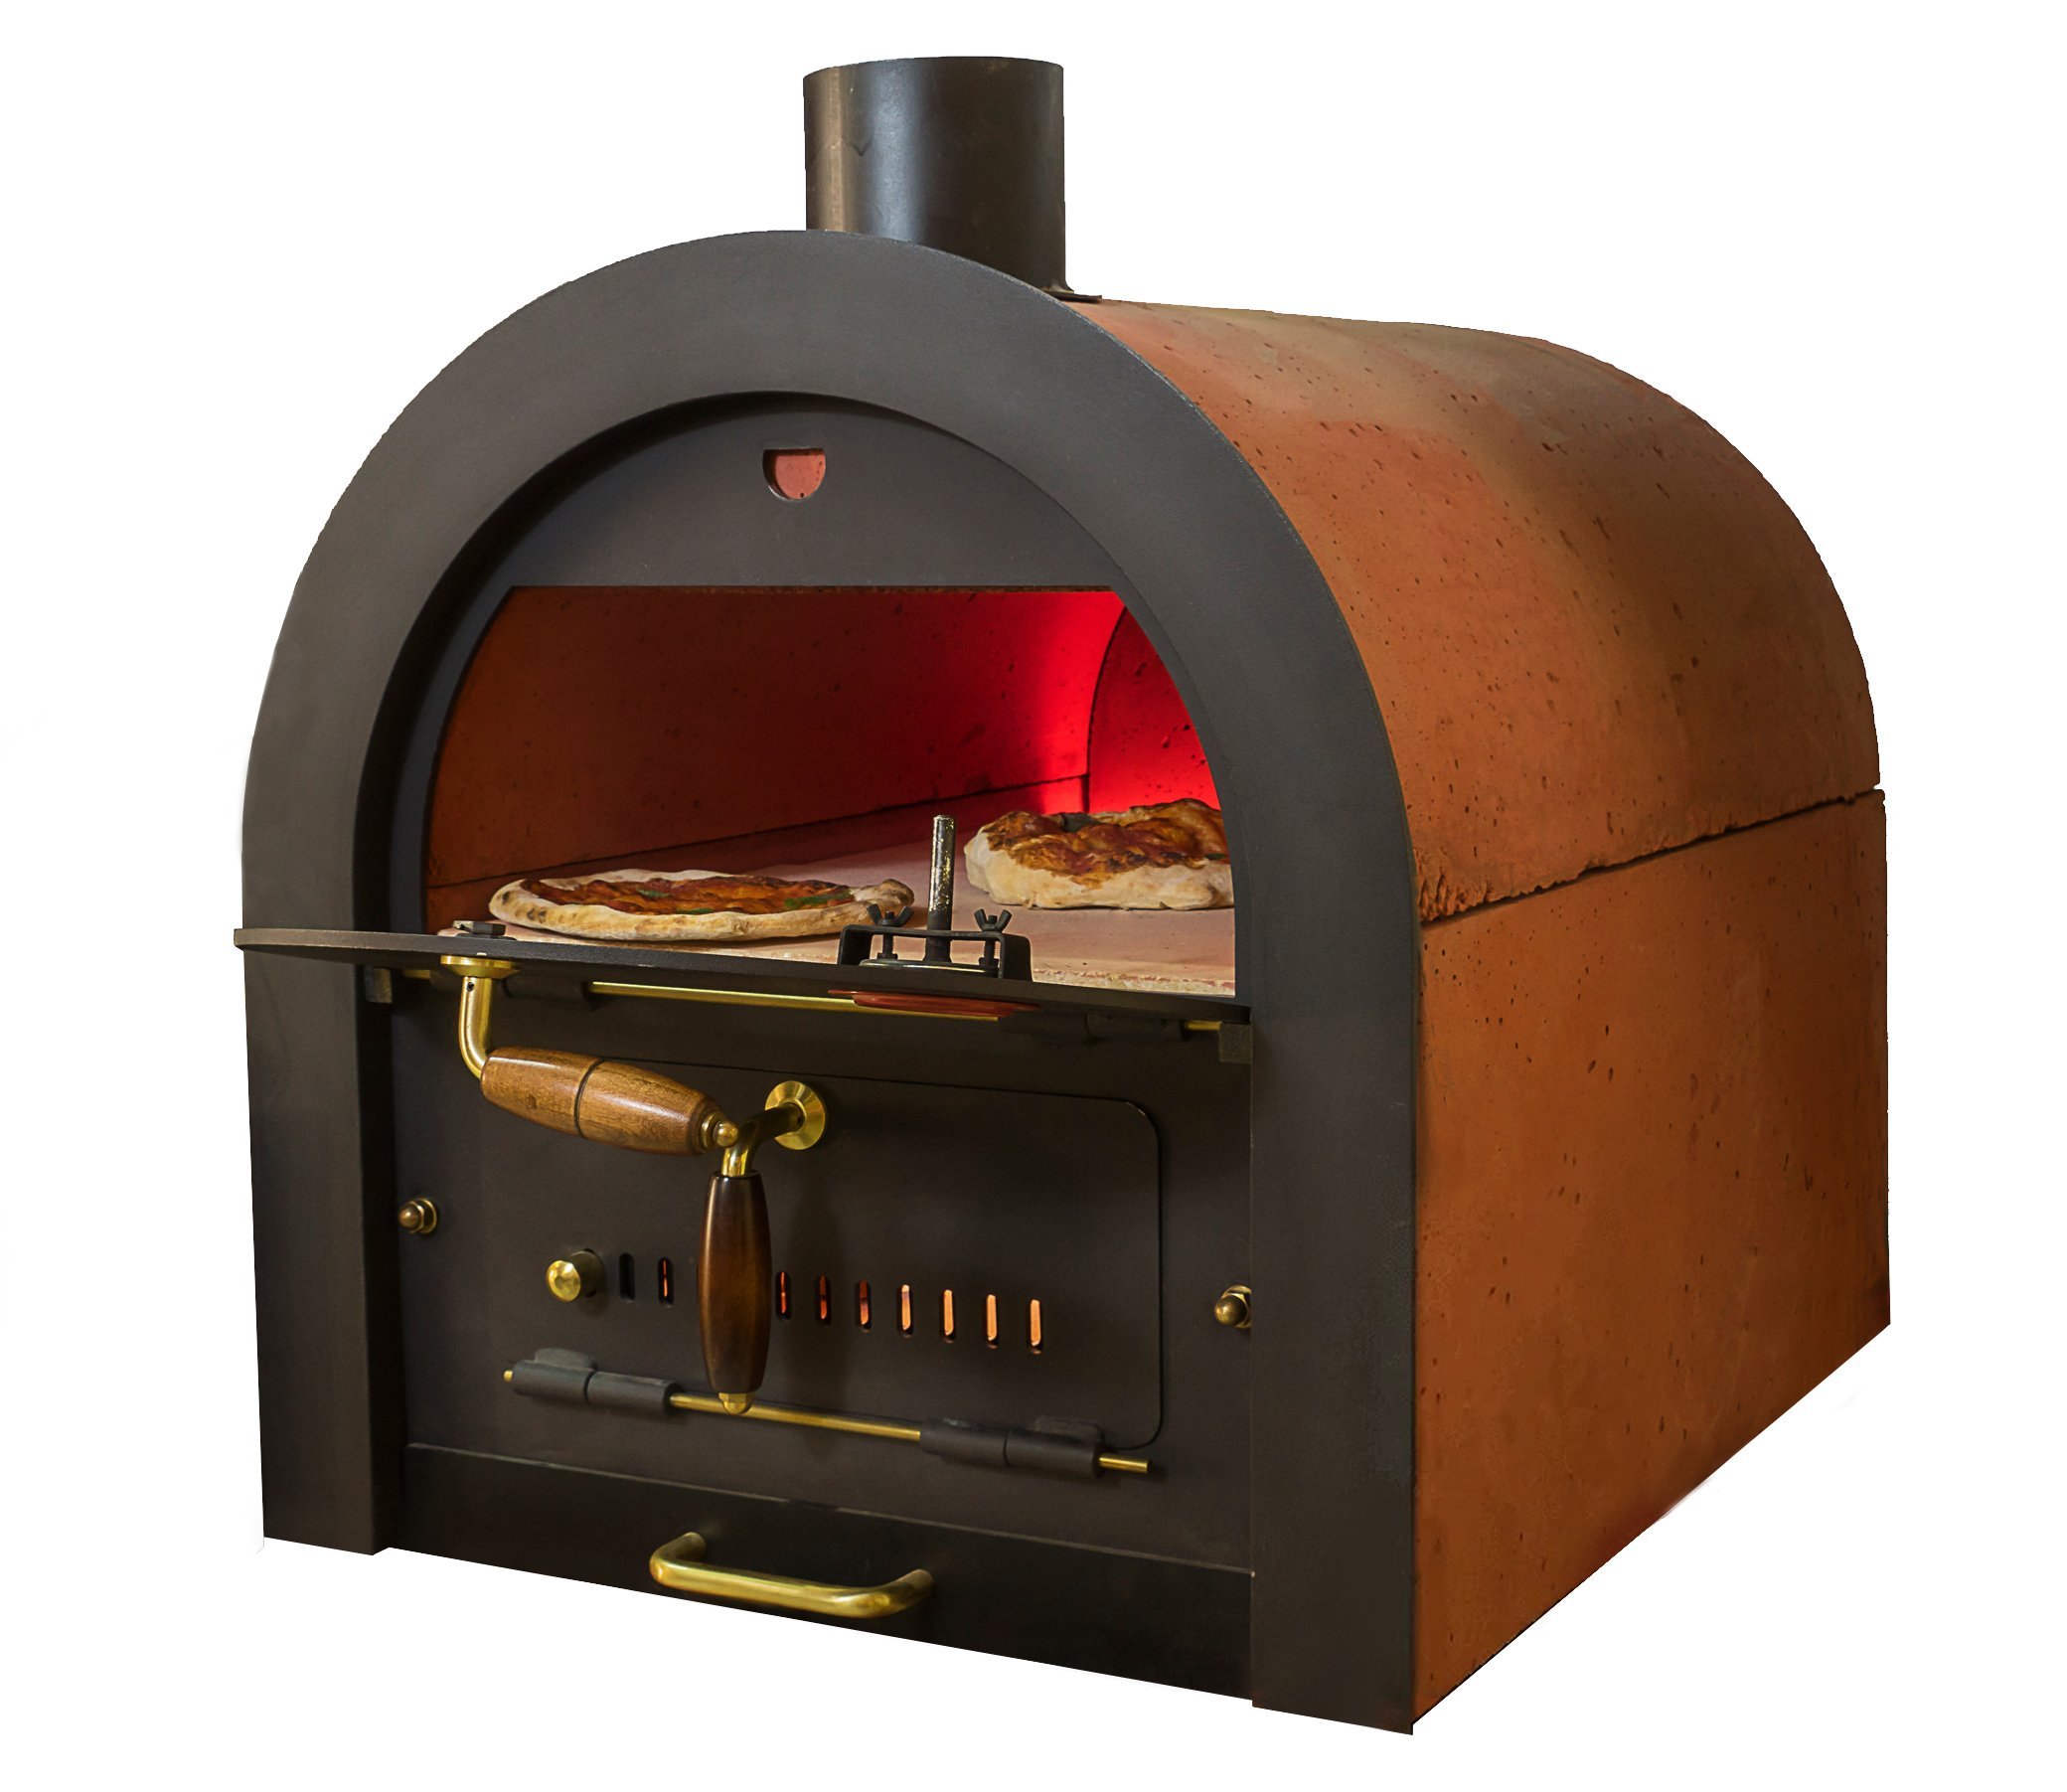 Bausatz Pizza- & Holzbackofen von Valoriani mit indirekter Befeuerung, 40x60cm Backfläche